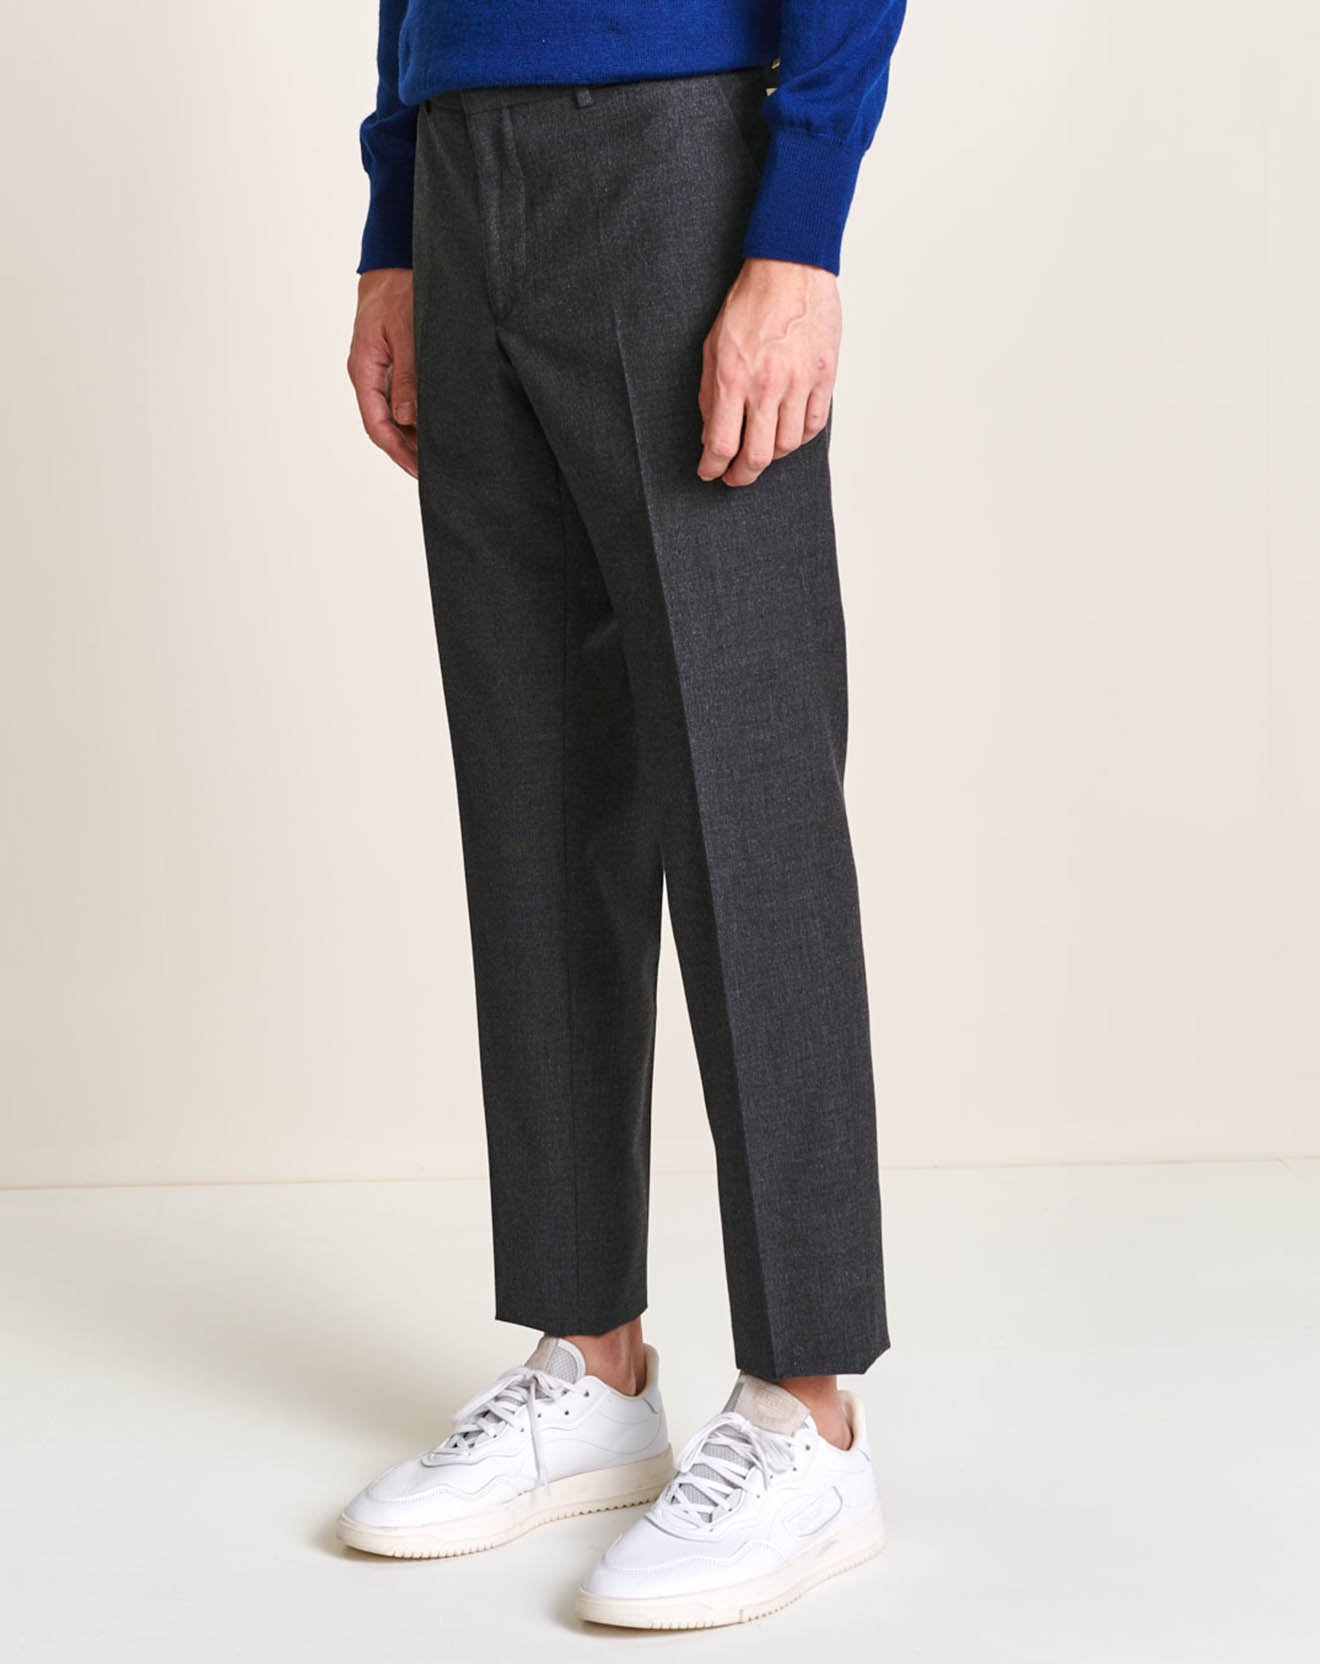 Pantalon en Coton & Laine Frush gris